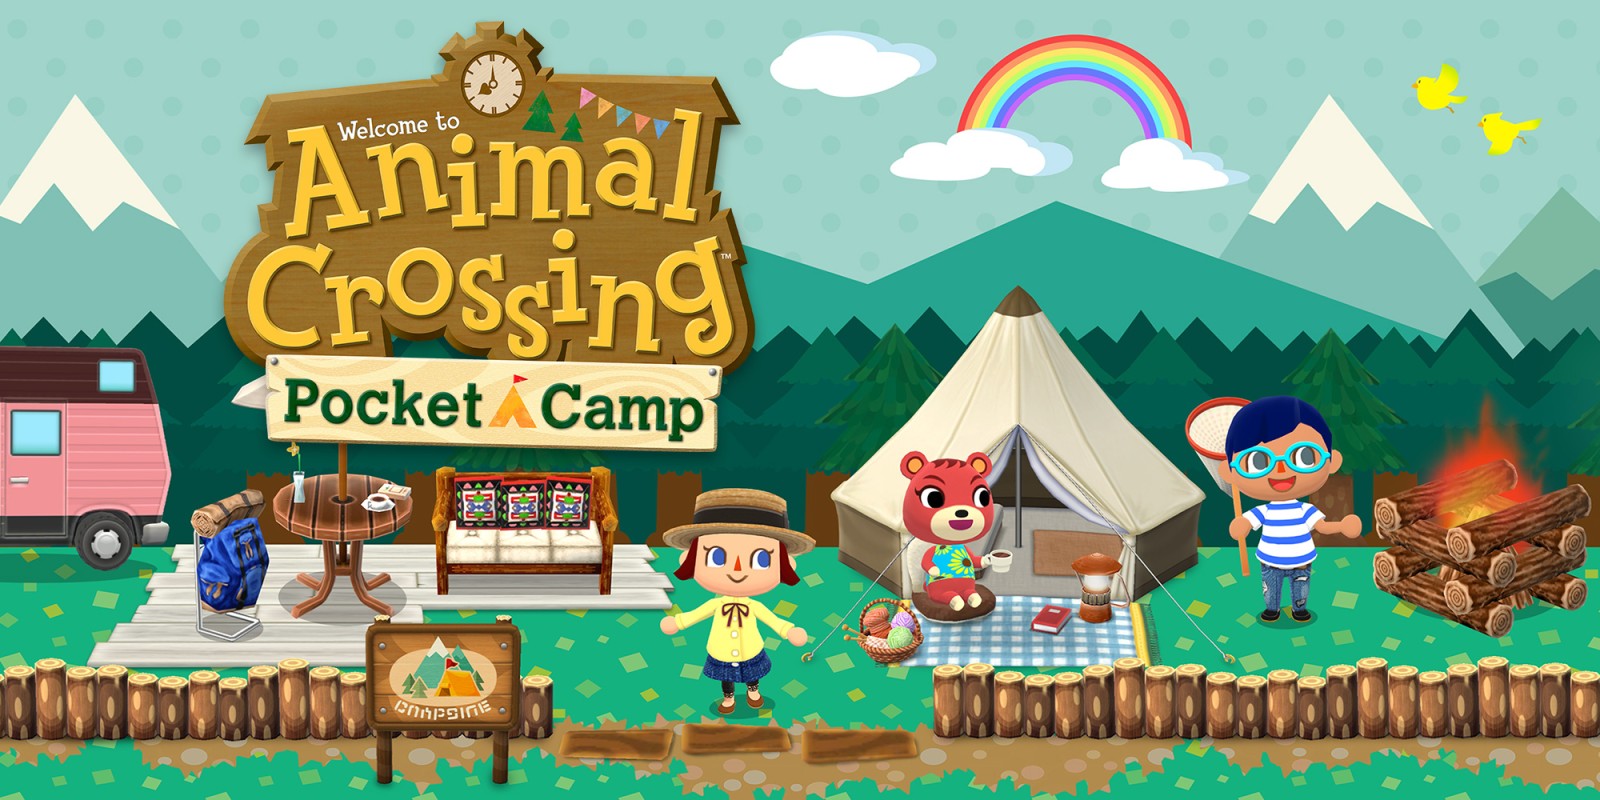 Mon avis sur Animal Crossing Pocket Camp, vite fait bien fait.